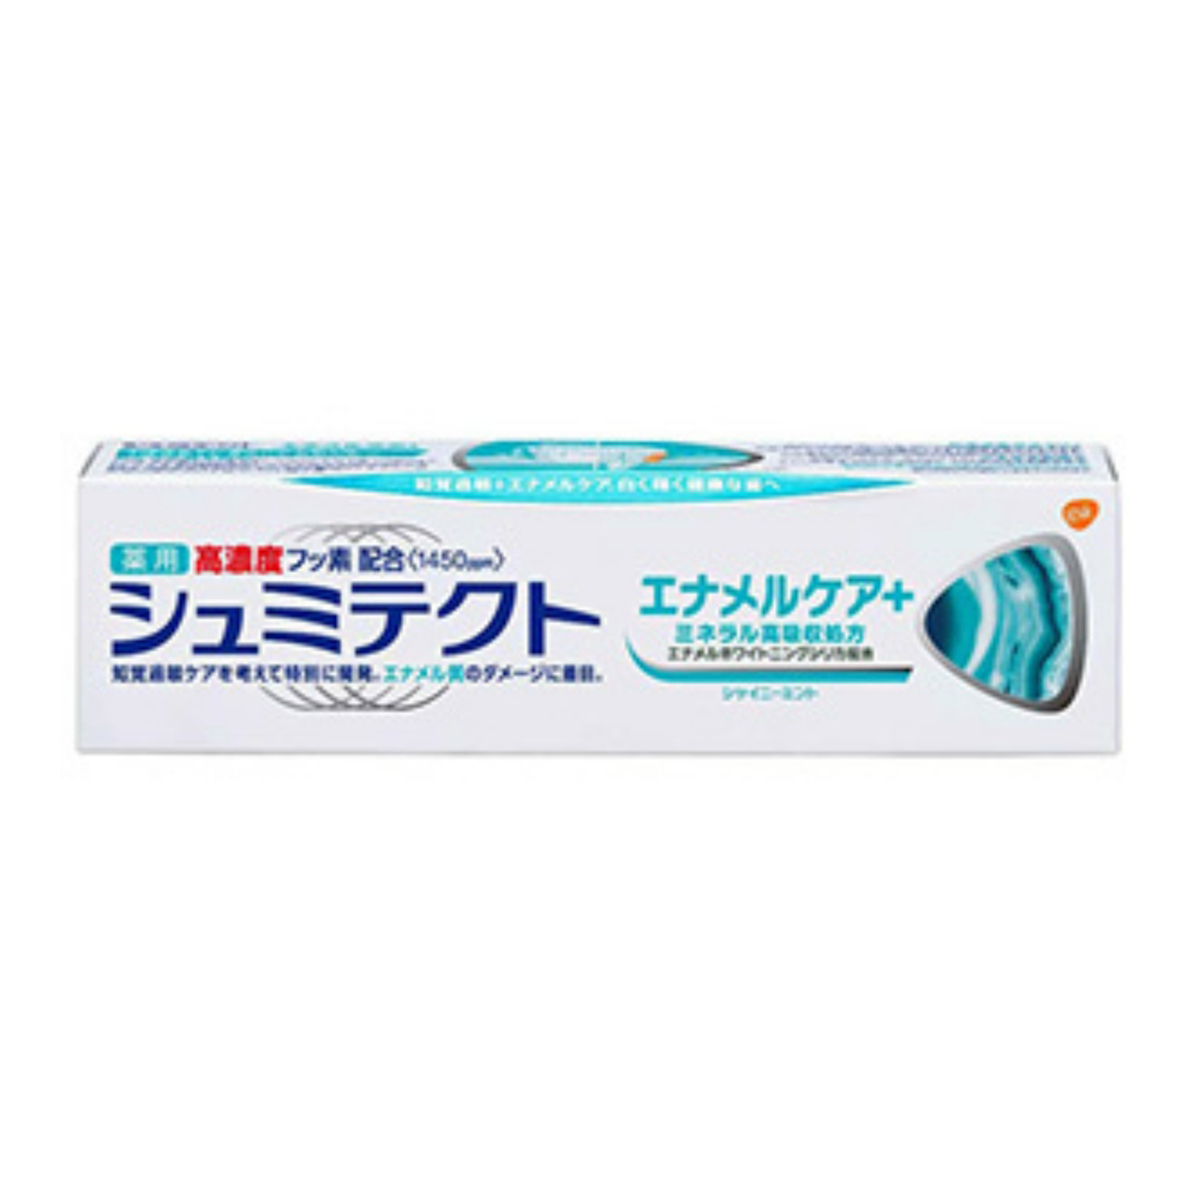 グラクソ・スミスクライン シュミテクト エナメルケア＋ 90g × 3本 薬用シュミテクト 歯磨き粉の商品画像